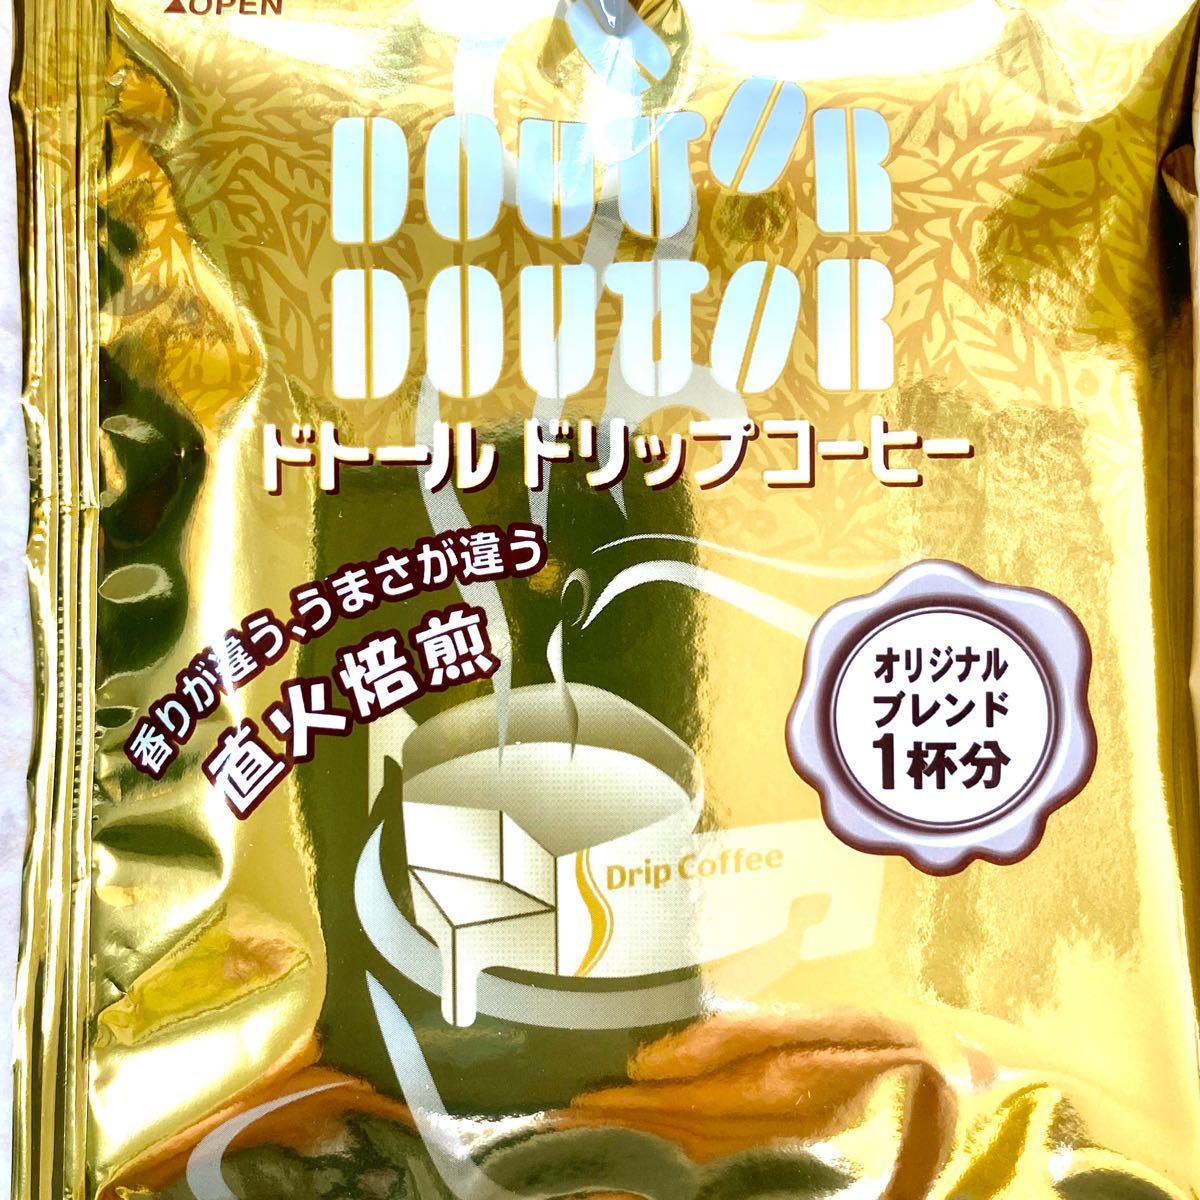 【ドトールコーヒー】ドリップコーヒー 24袋セット